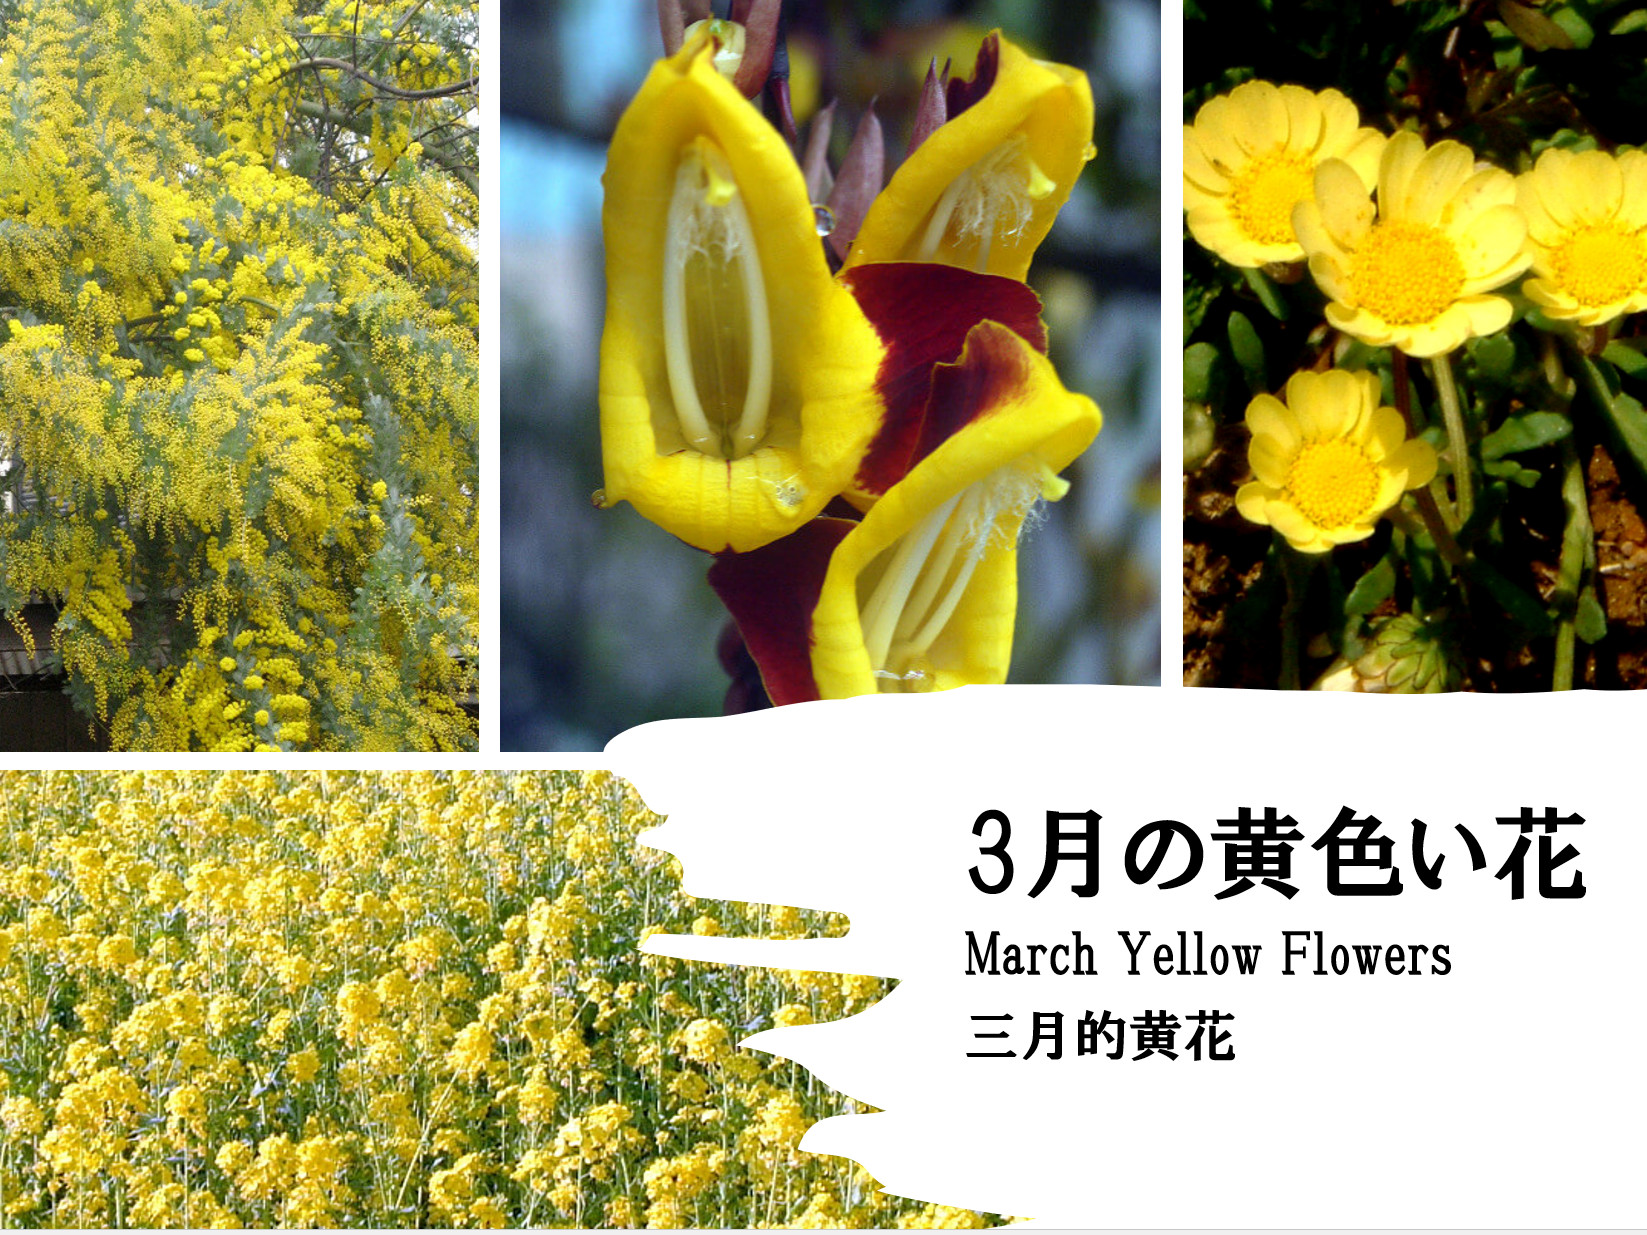 3月に咲く黄色い花